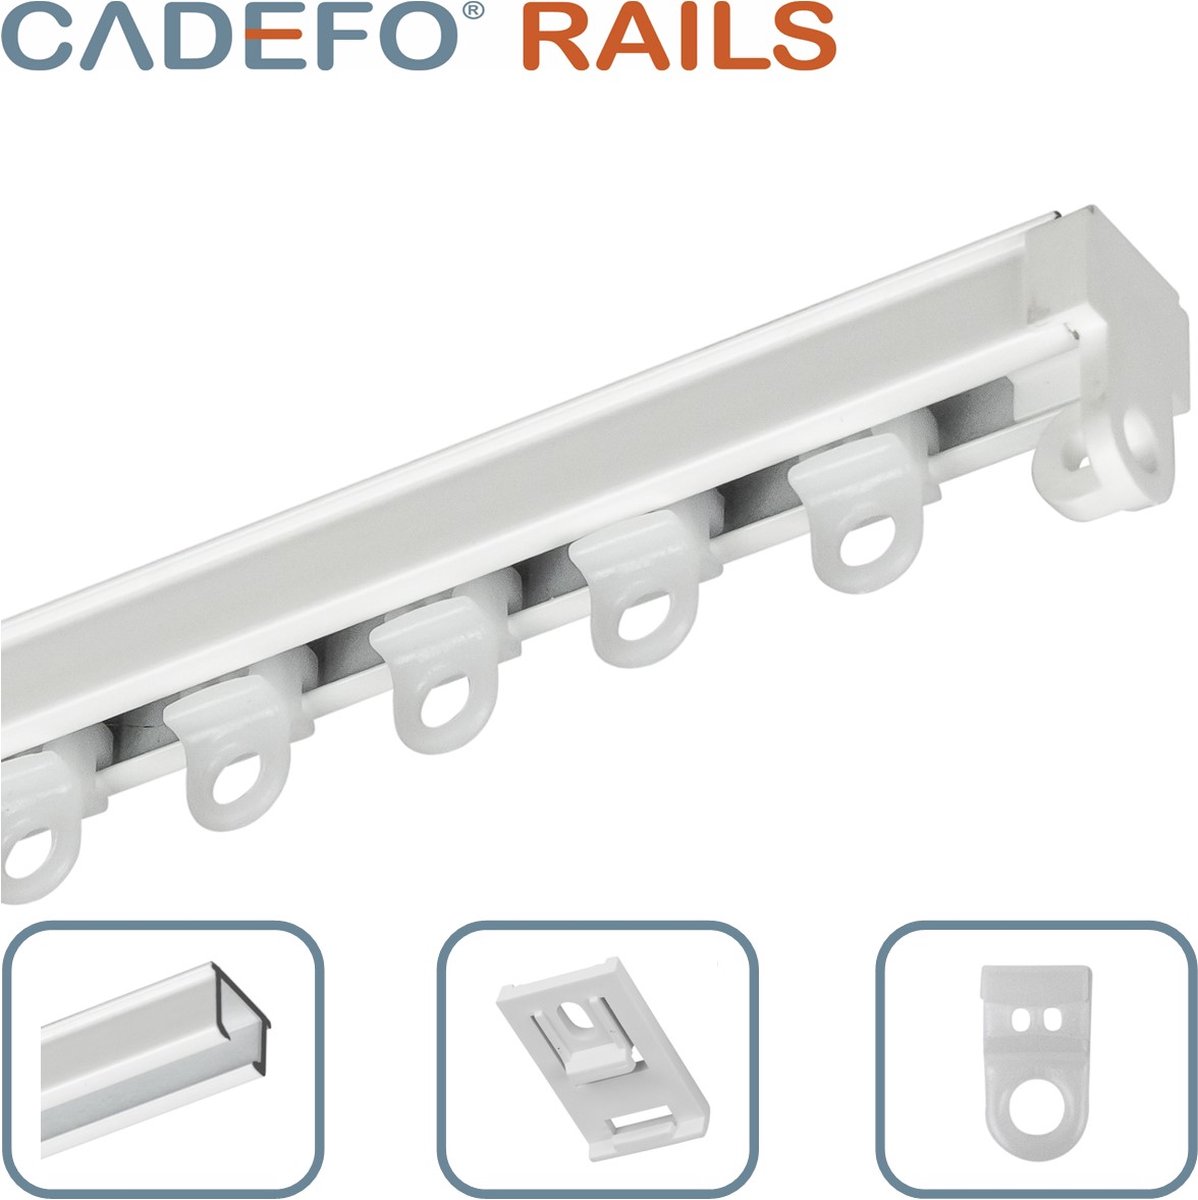 CADEFO RAILS (201 - 250 cm) Gordijnrails - Compleet op maat! - UIT 1 STUK - Leverbaar tot 6 meter - Plafondbevestiging - Lengte 249 cm